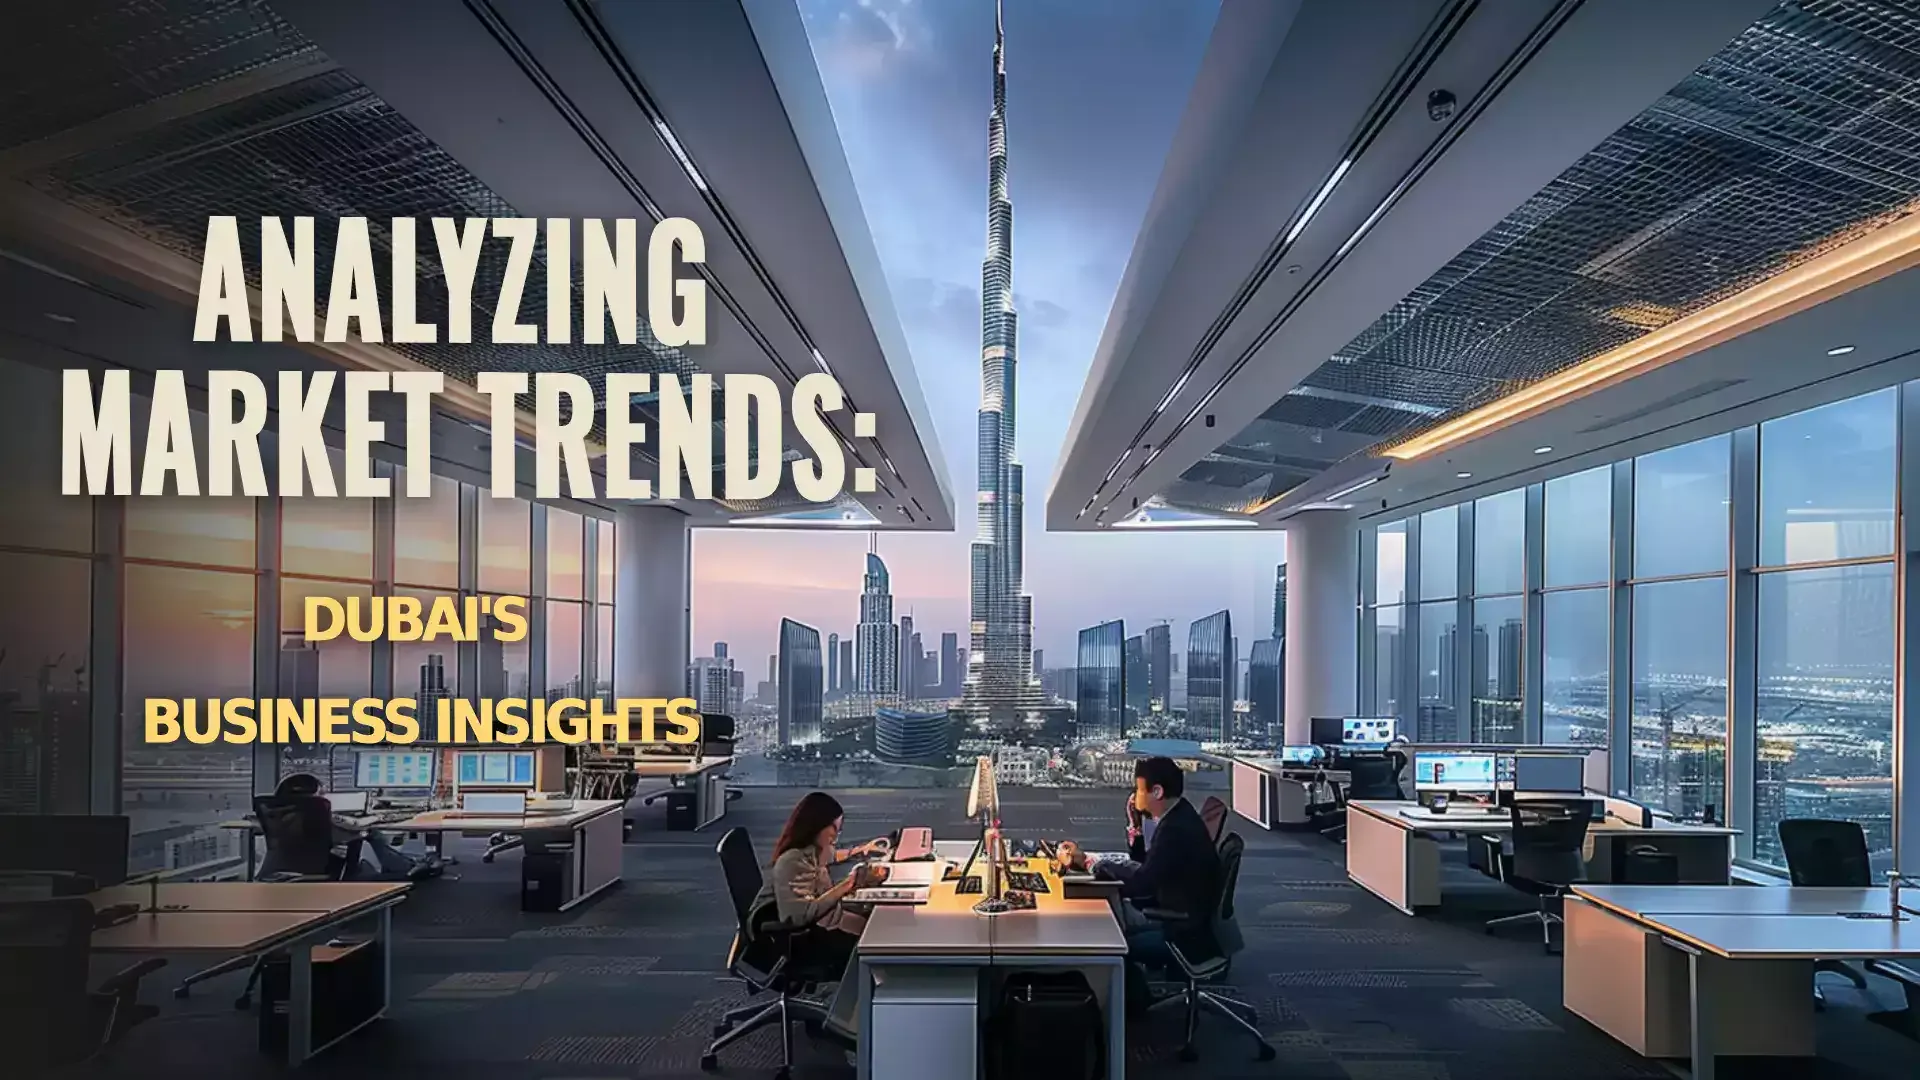 Image illustrating the latest market trends shaping Dubai's dynamic economy